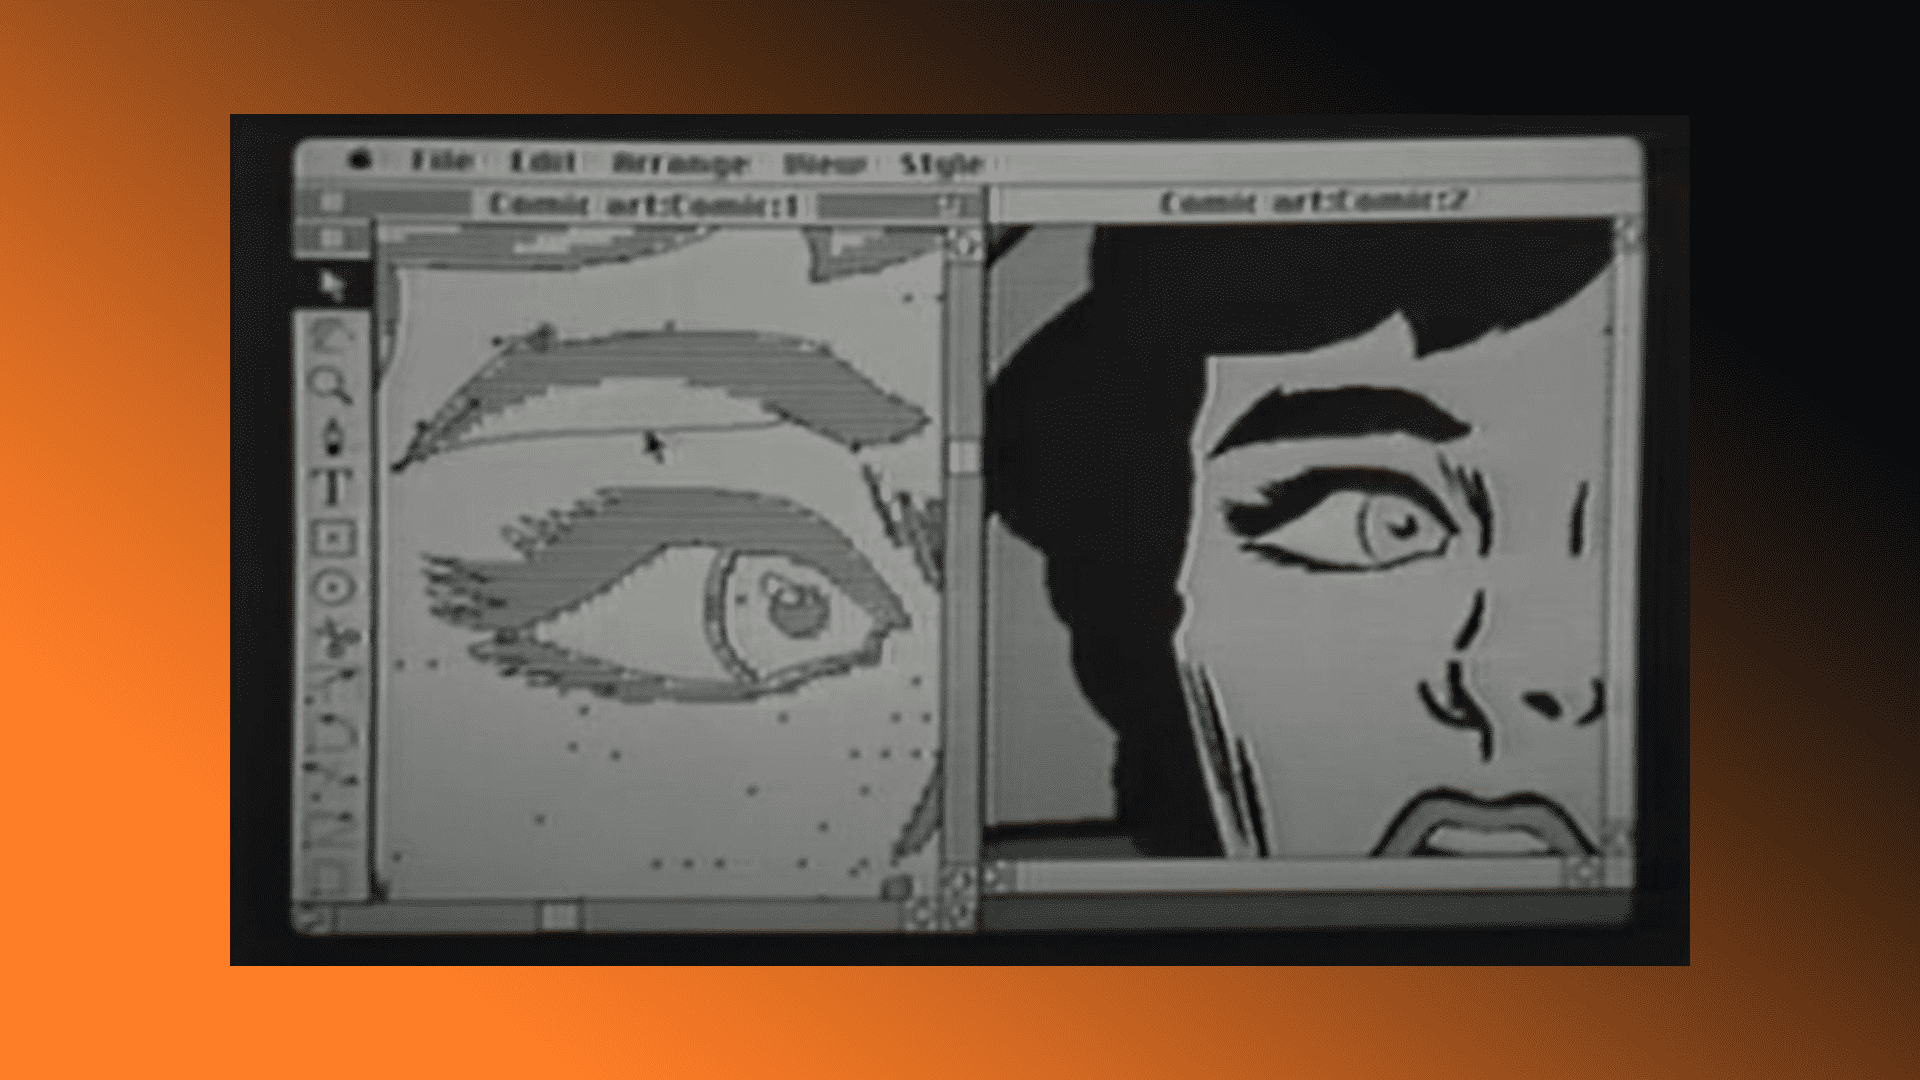 El primer tutorial de Adobe Illustrator es una monstruosidad